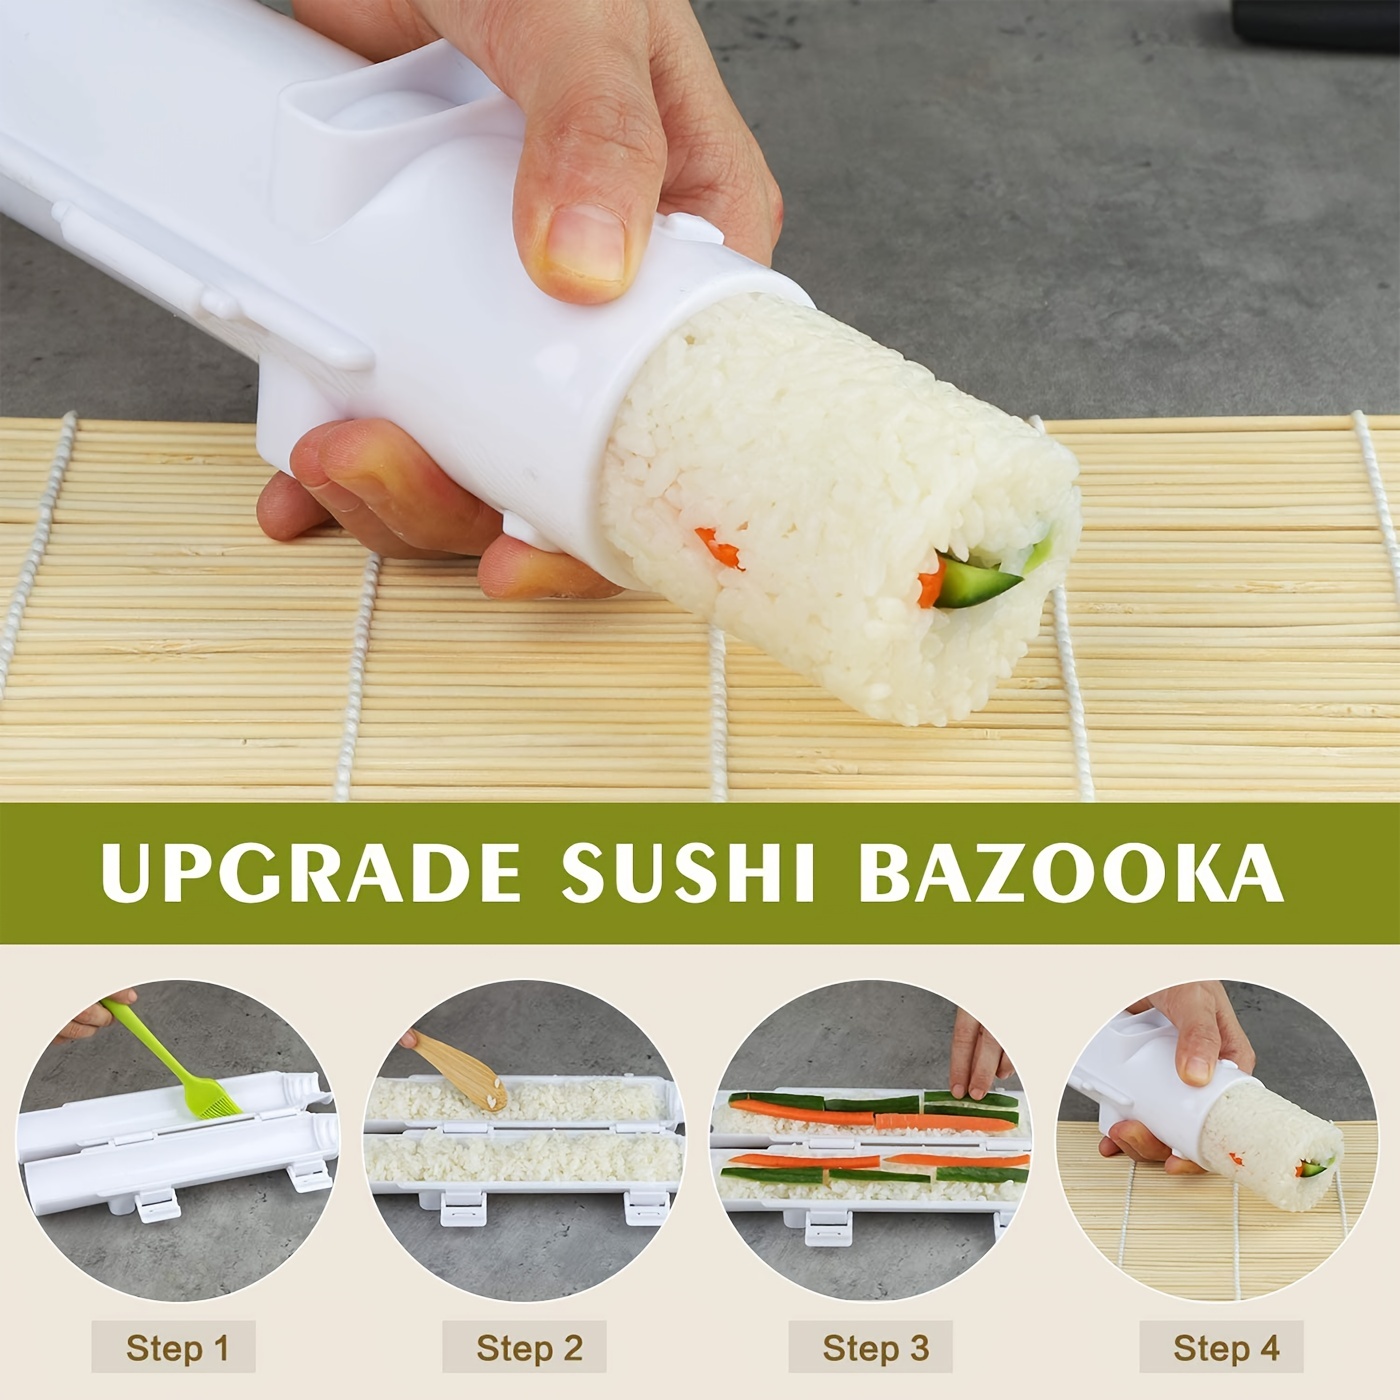 Bamboo Sushi-Making-Kit for Beginners,23PCS Sushi-Kit, Bazooka Sushi Roller  with Sushi Mat, Sushi Knife, Tweezers, Chopsticks and Holder, Mold